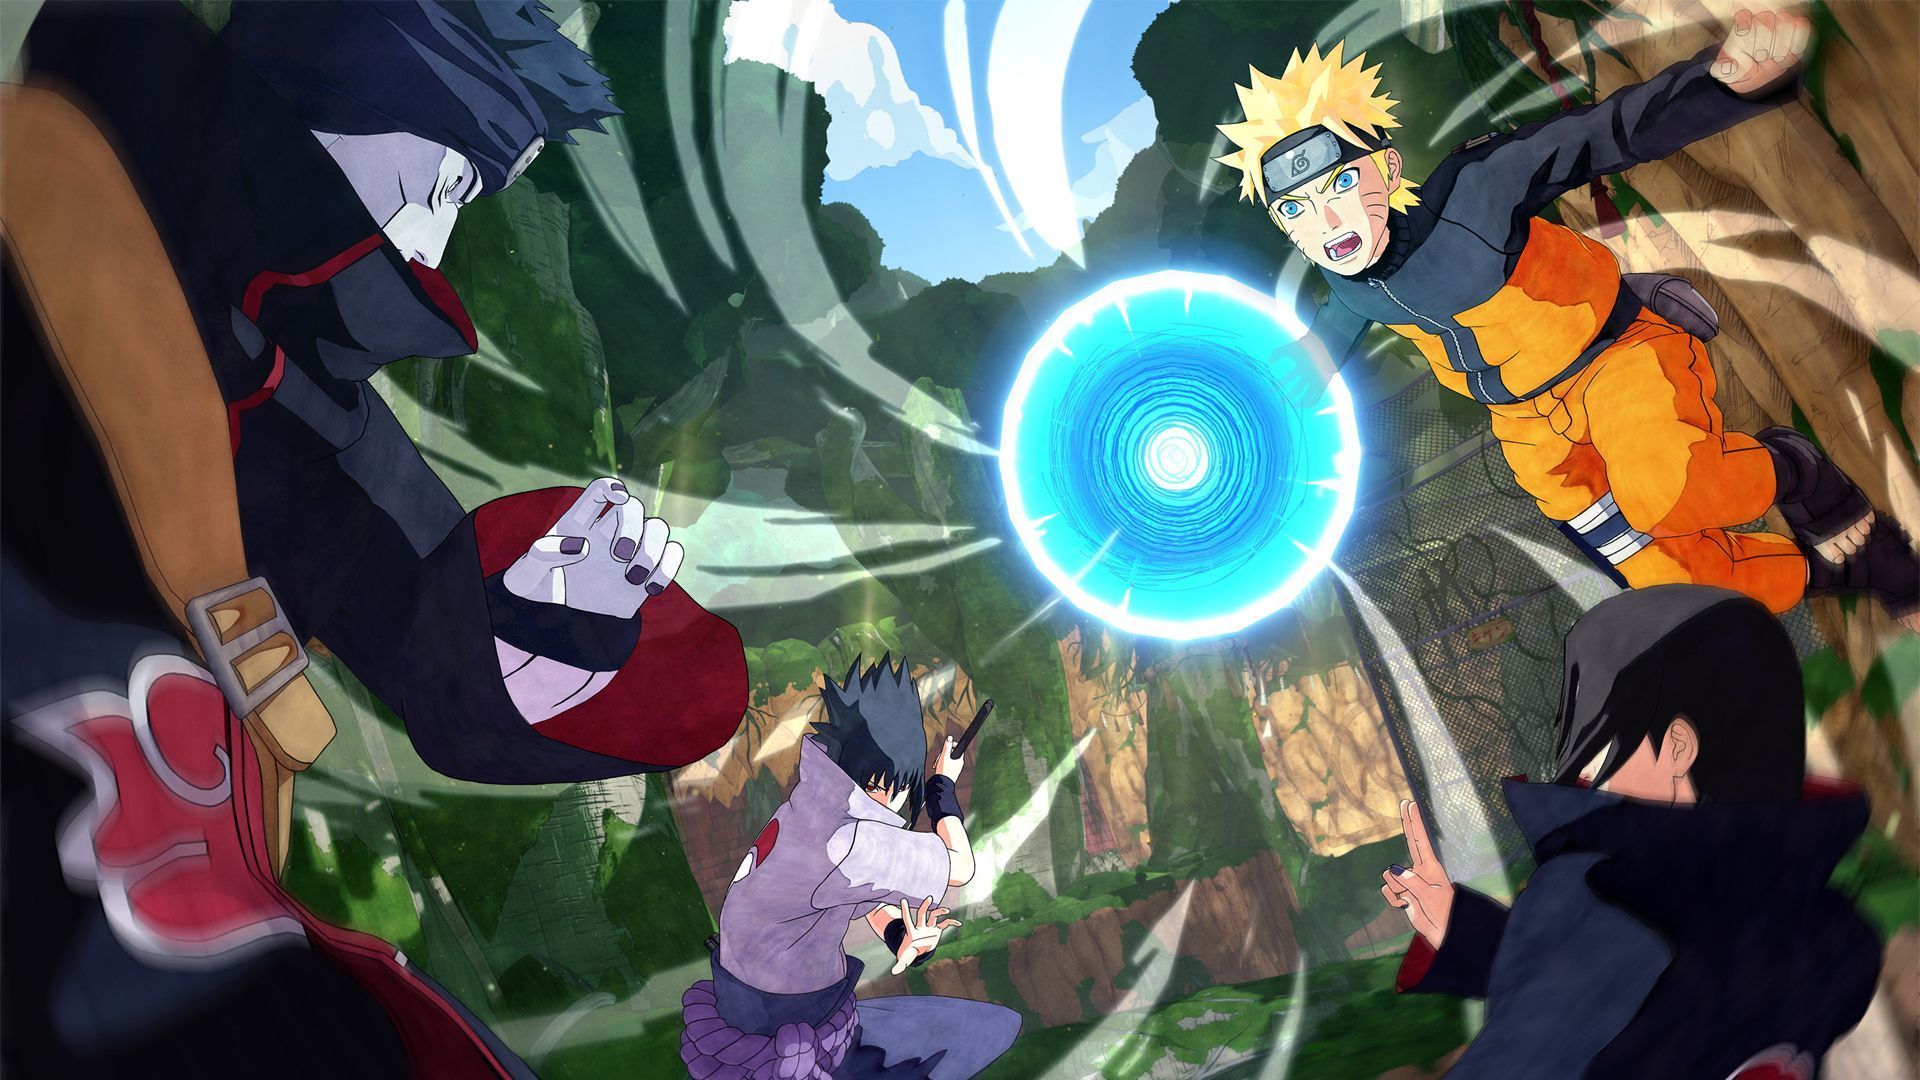 Naruto Game Wallpaper Free Naruto Game Background 2020. Naruto games, Video game genre, Boruto